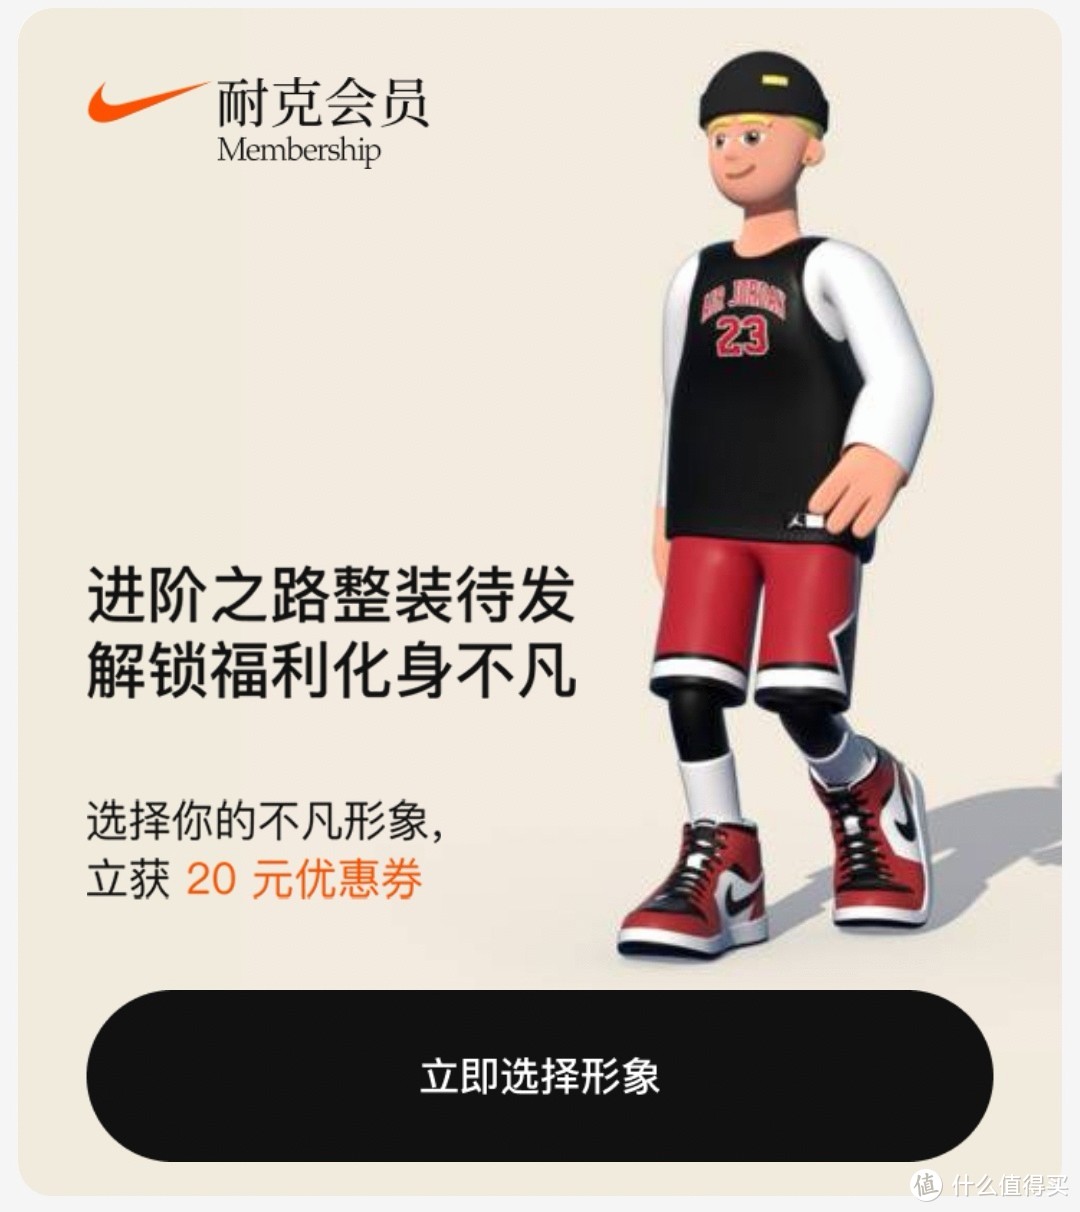 双十一种草大作战之Nike天猫旗舰店